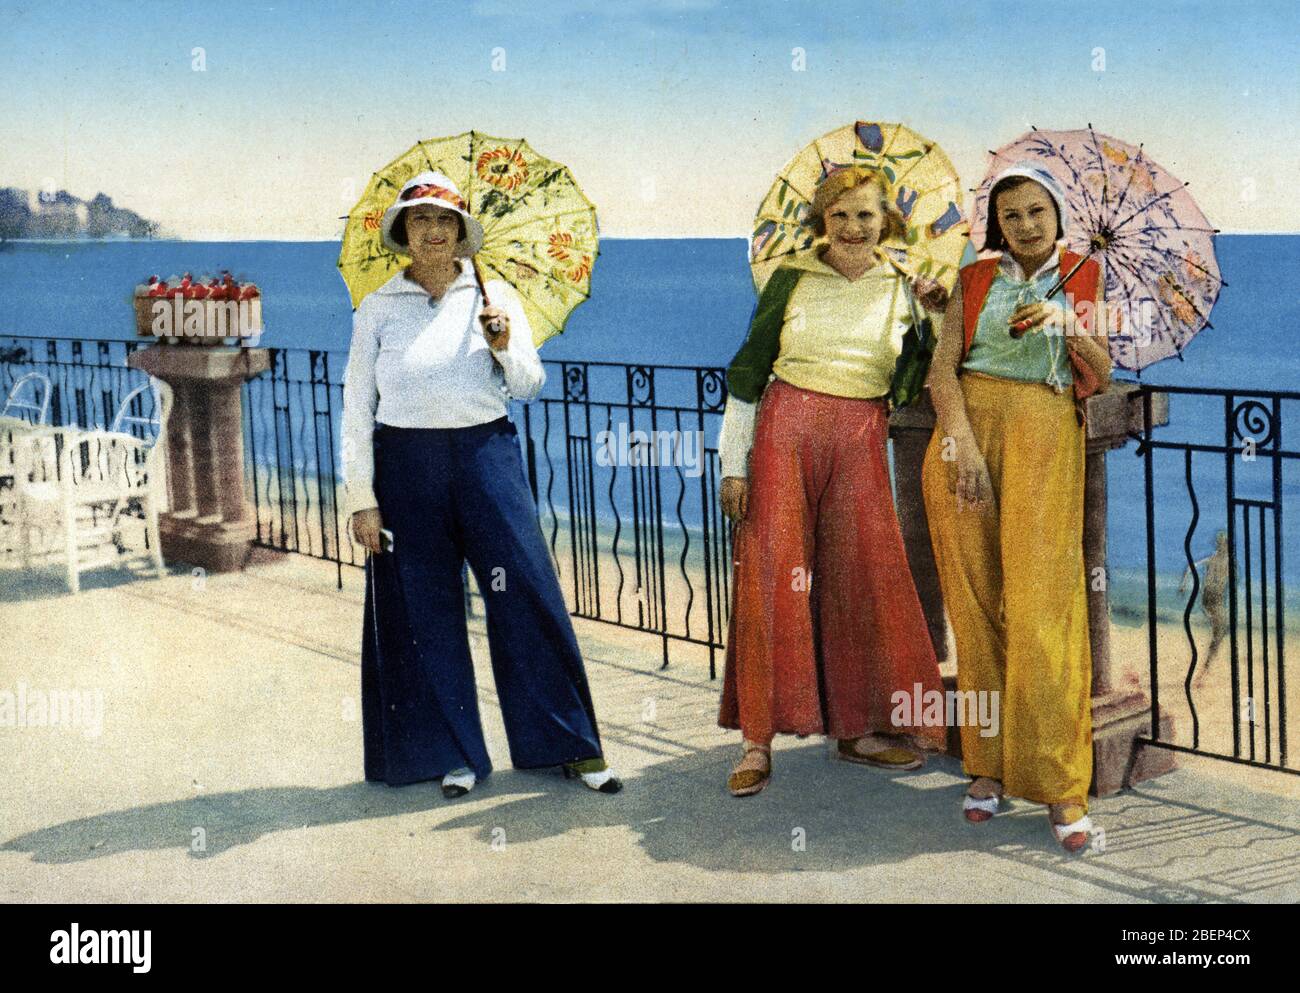 Jeunes femmes vetues a la mode pyjama dans les annees 1930, Juan les Pins, (women wearing pajamas in the 1930s) Carte postale Collection privee Stock Photo